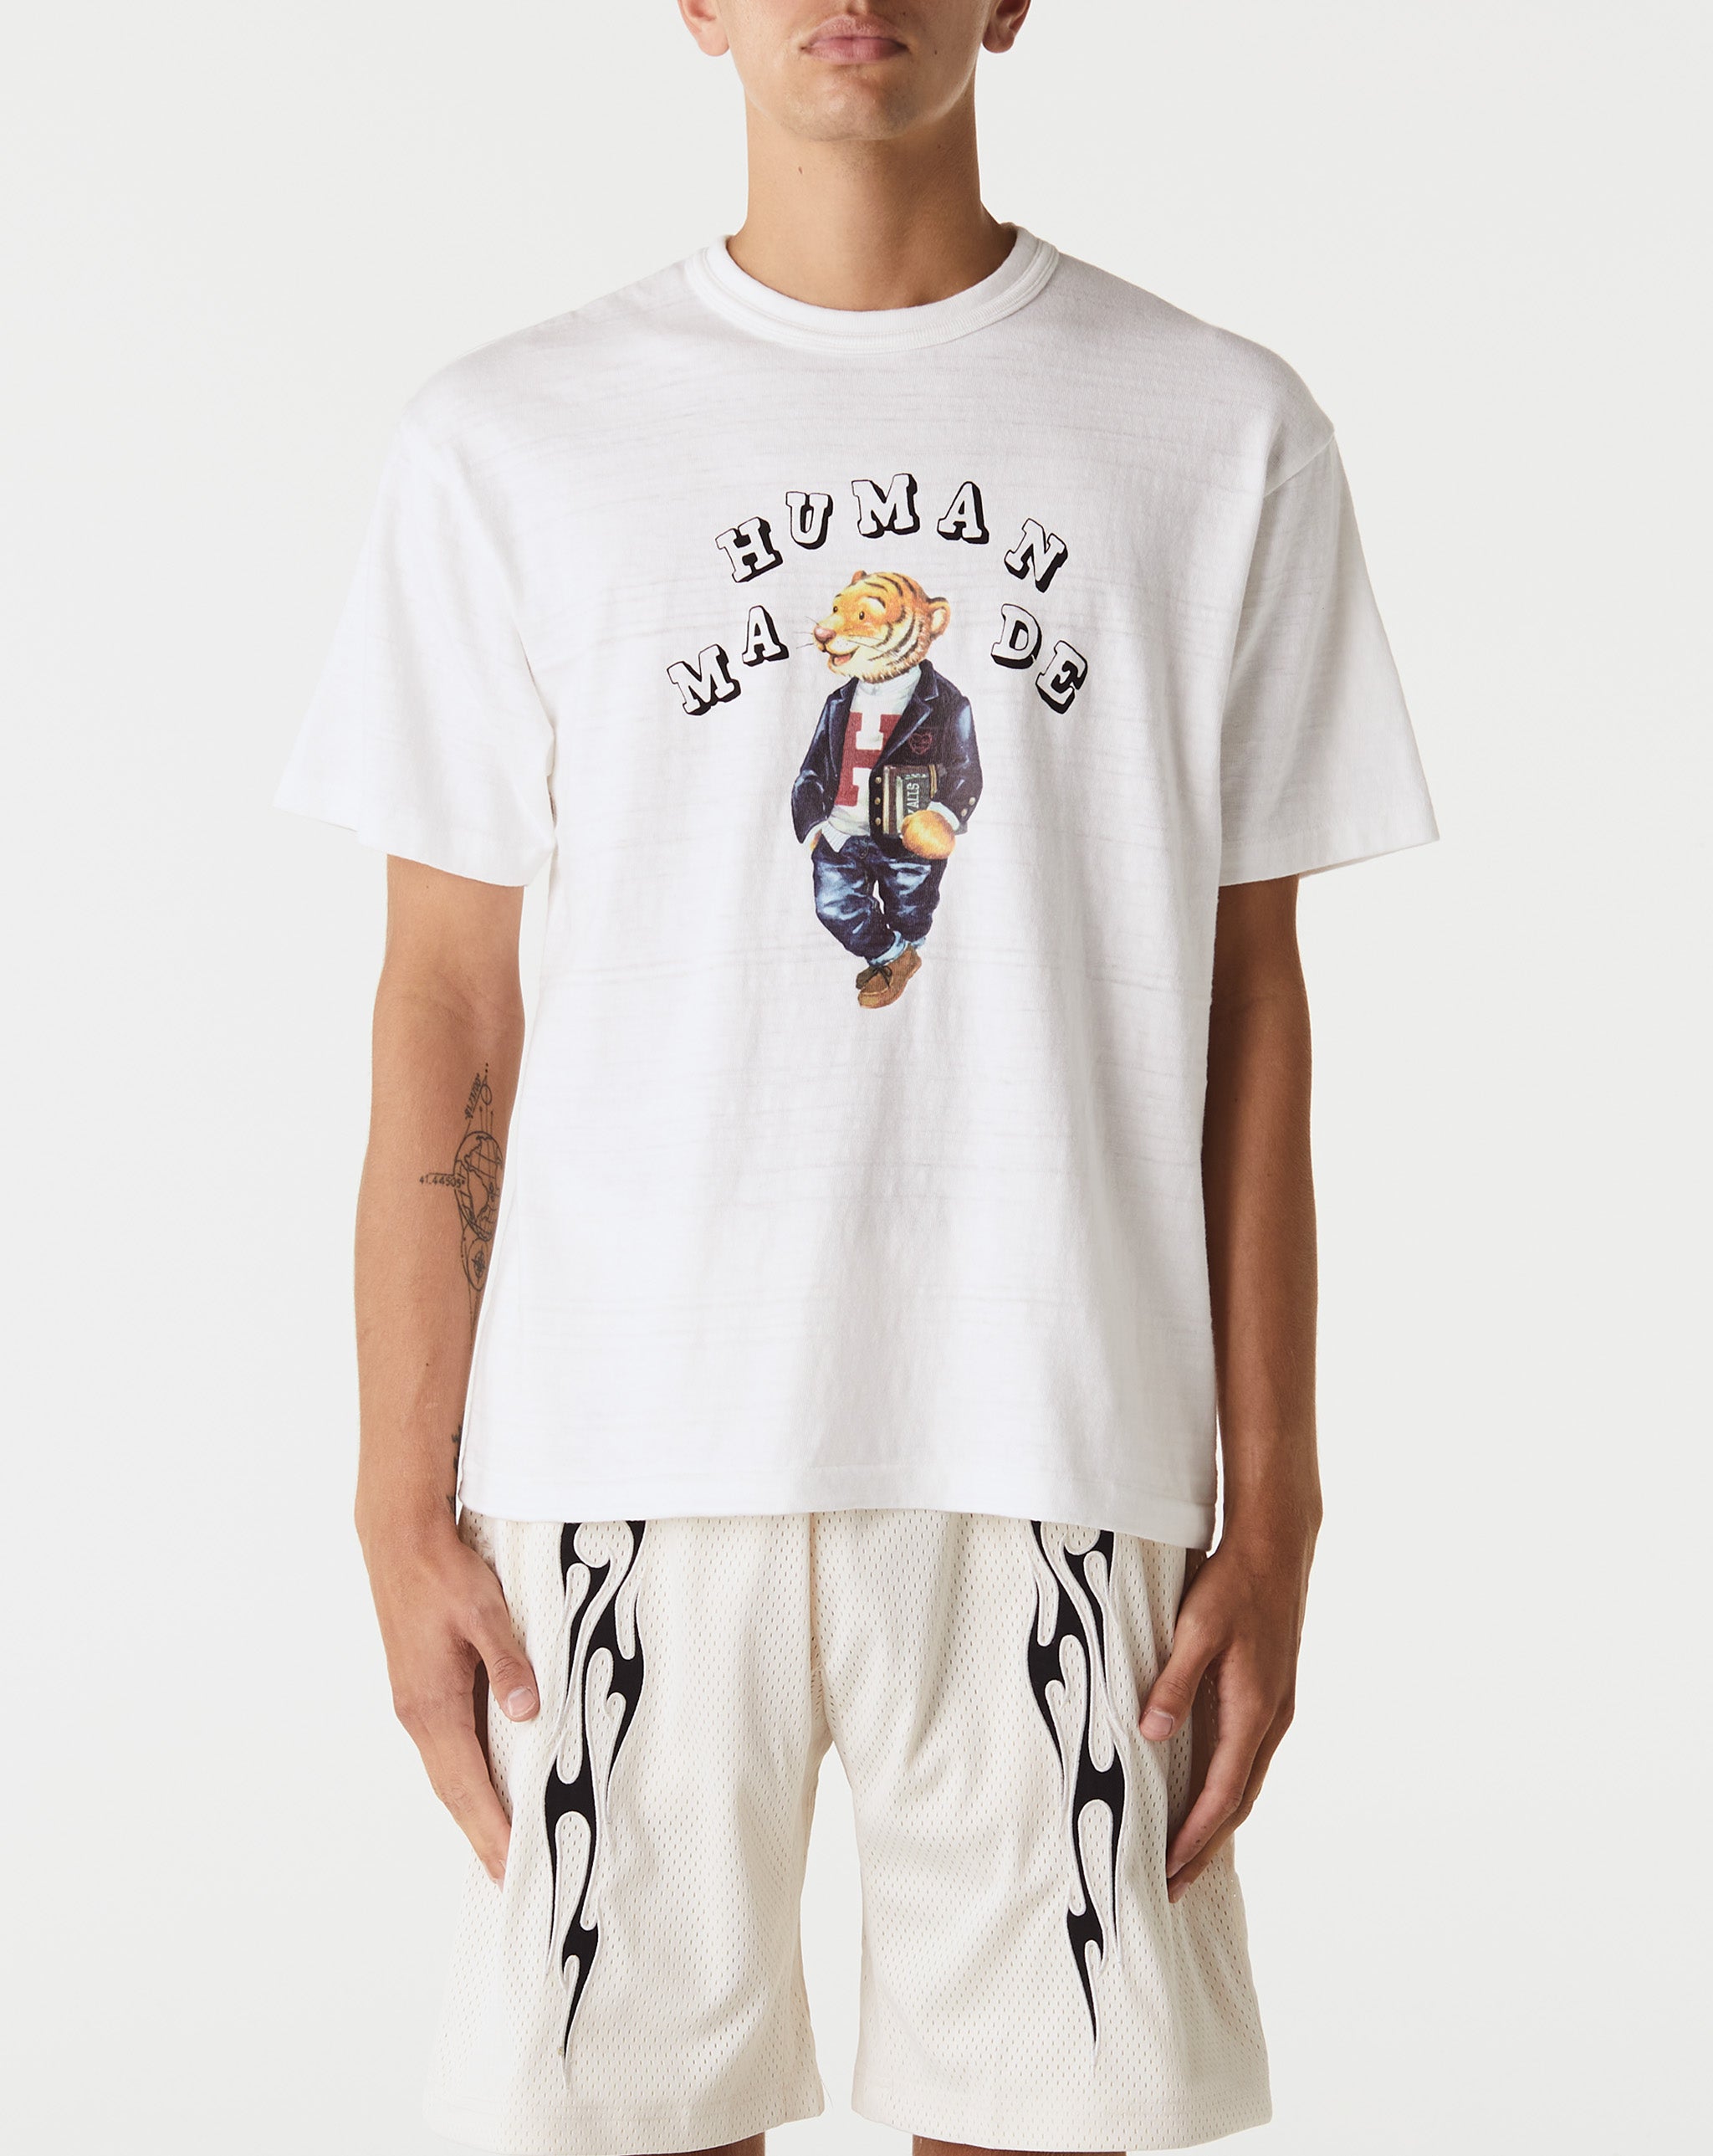 Human Made Sinners Resort Shirt  - Cheap Urlfreeze Jordan outlet